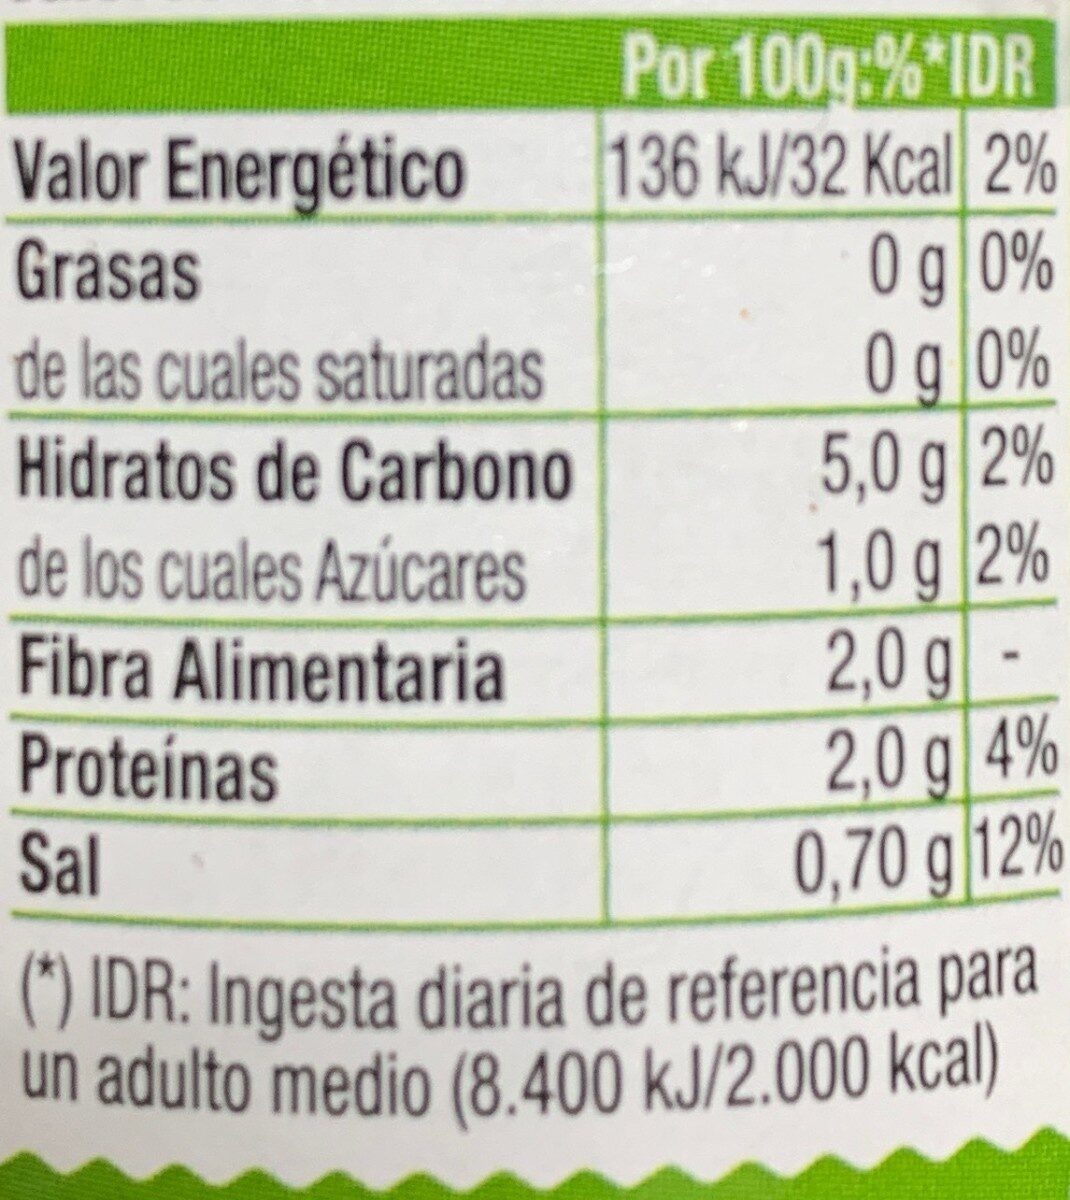 Corazones de alcachofa - Medianos - Receta Traducional - Nutrition facts - es